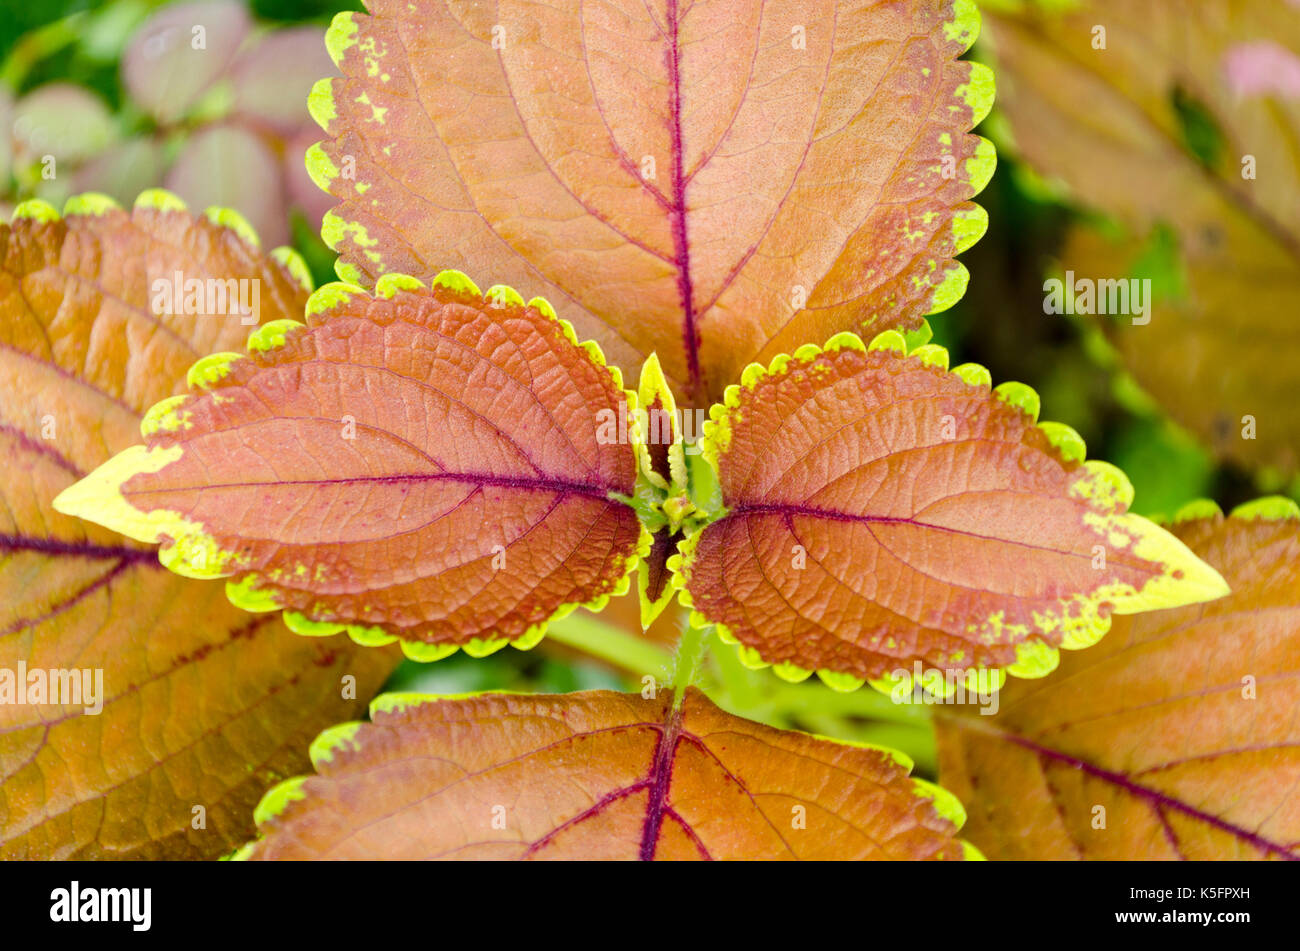 Natur des Farbschemas bei der Anzeige. Lebendige bunte Blätter in einem lila, braun und grün Farbe Kombination im Garten. Stockfoto